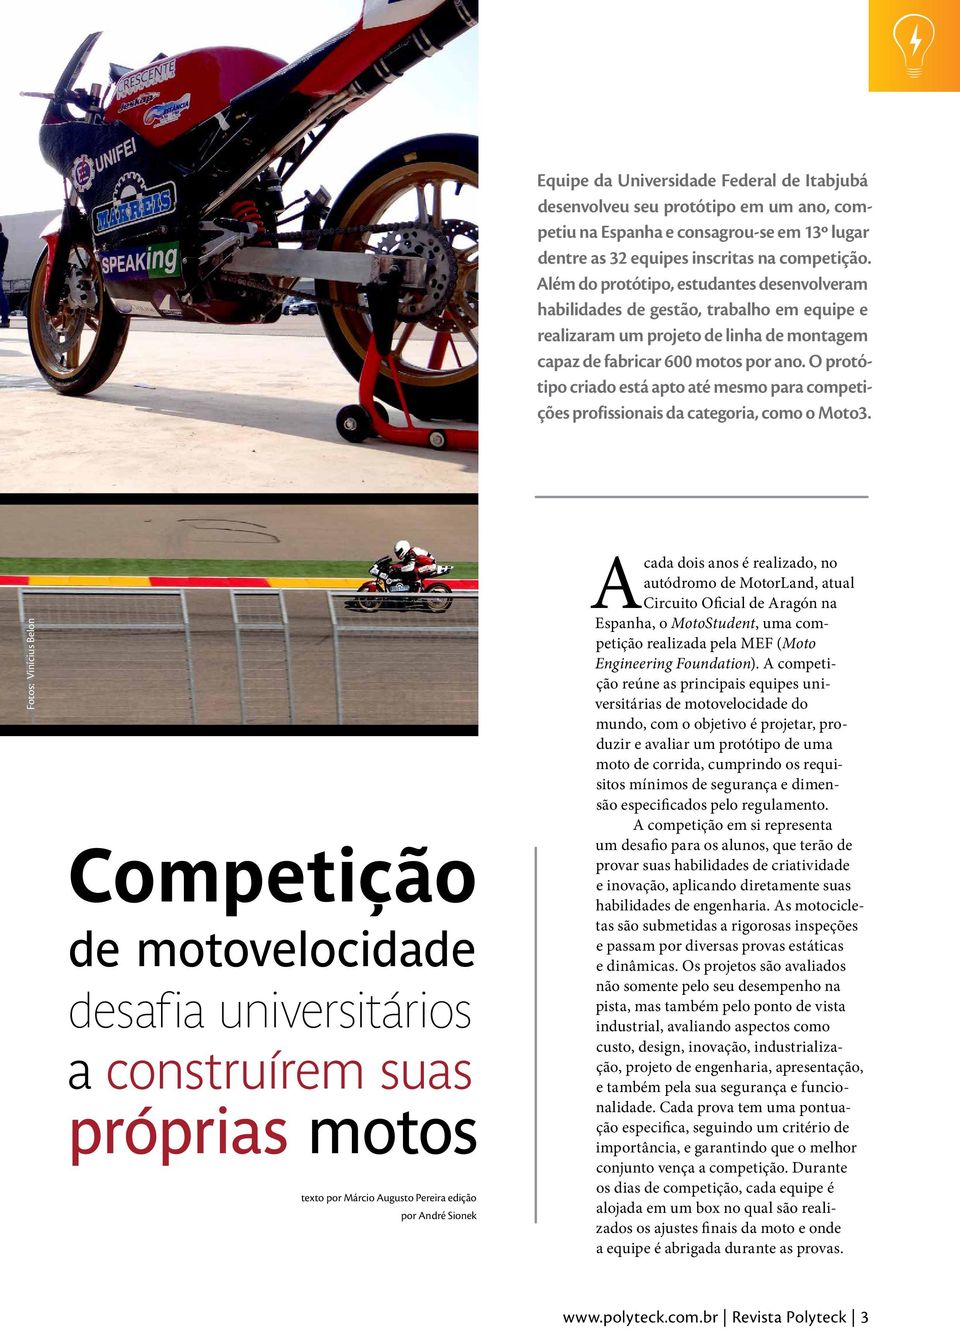 O protótipo criado está apto até mesmo para competições profissionais da categoria, como o Moto3.